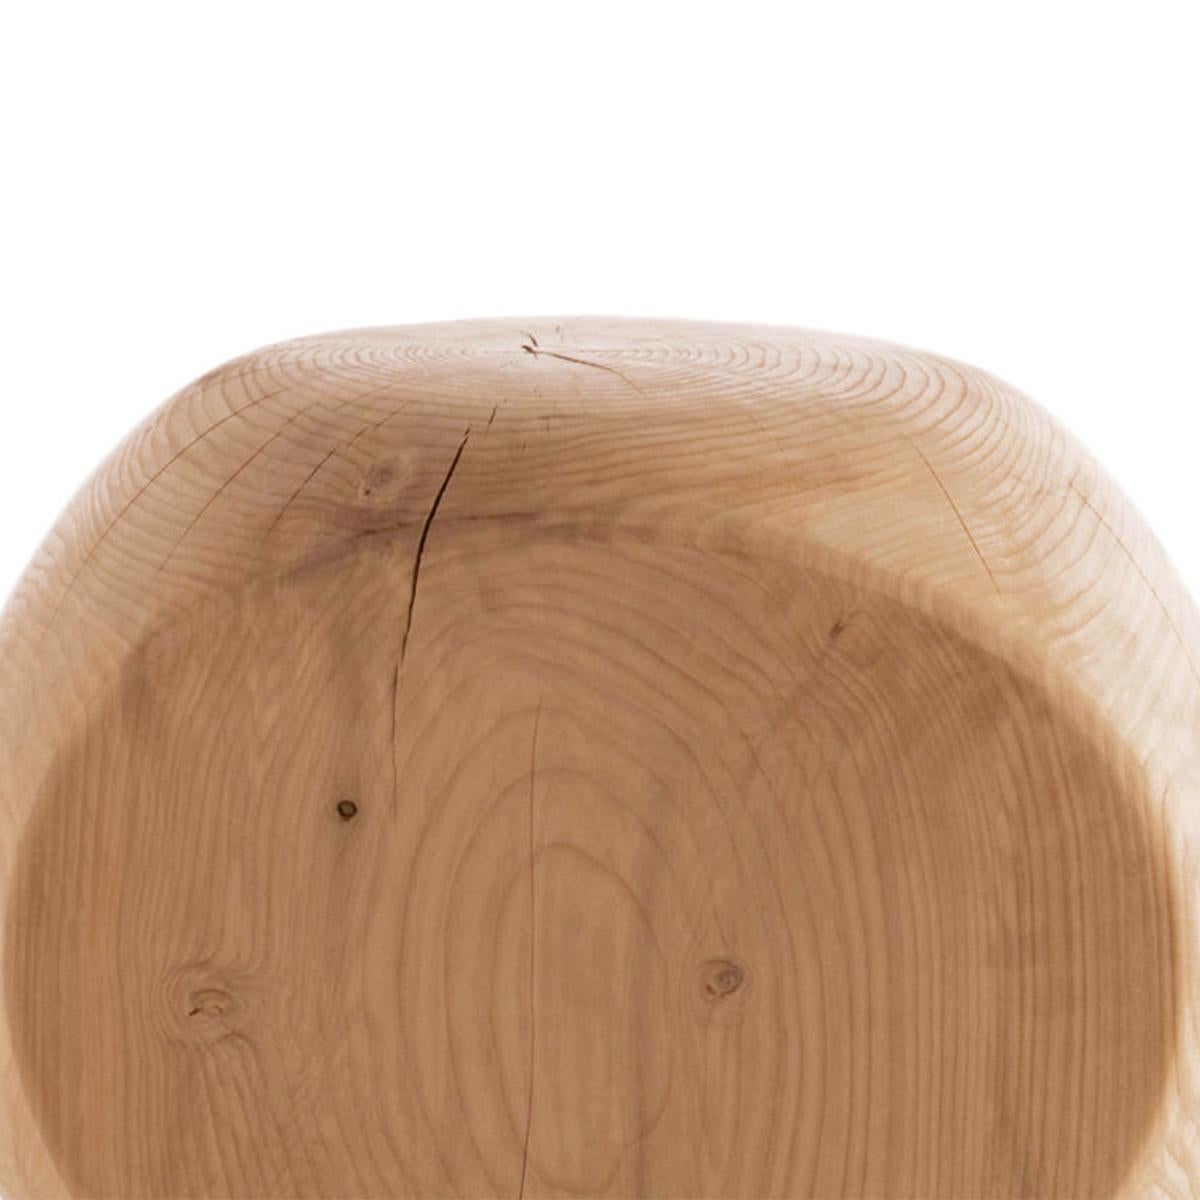 Hocker cocoona Form 3 in festen natürlichen aromatischen
zedernholz. Hergestellt in einem Block aus Zedernholz.
Behandelt mit natürlichen Pinienextrakten.
Kann für die 3 Seiten des Hockers verwendet werden.
Massive Zedernholz enthalten Bewegung,